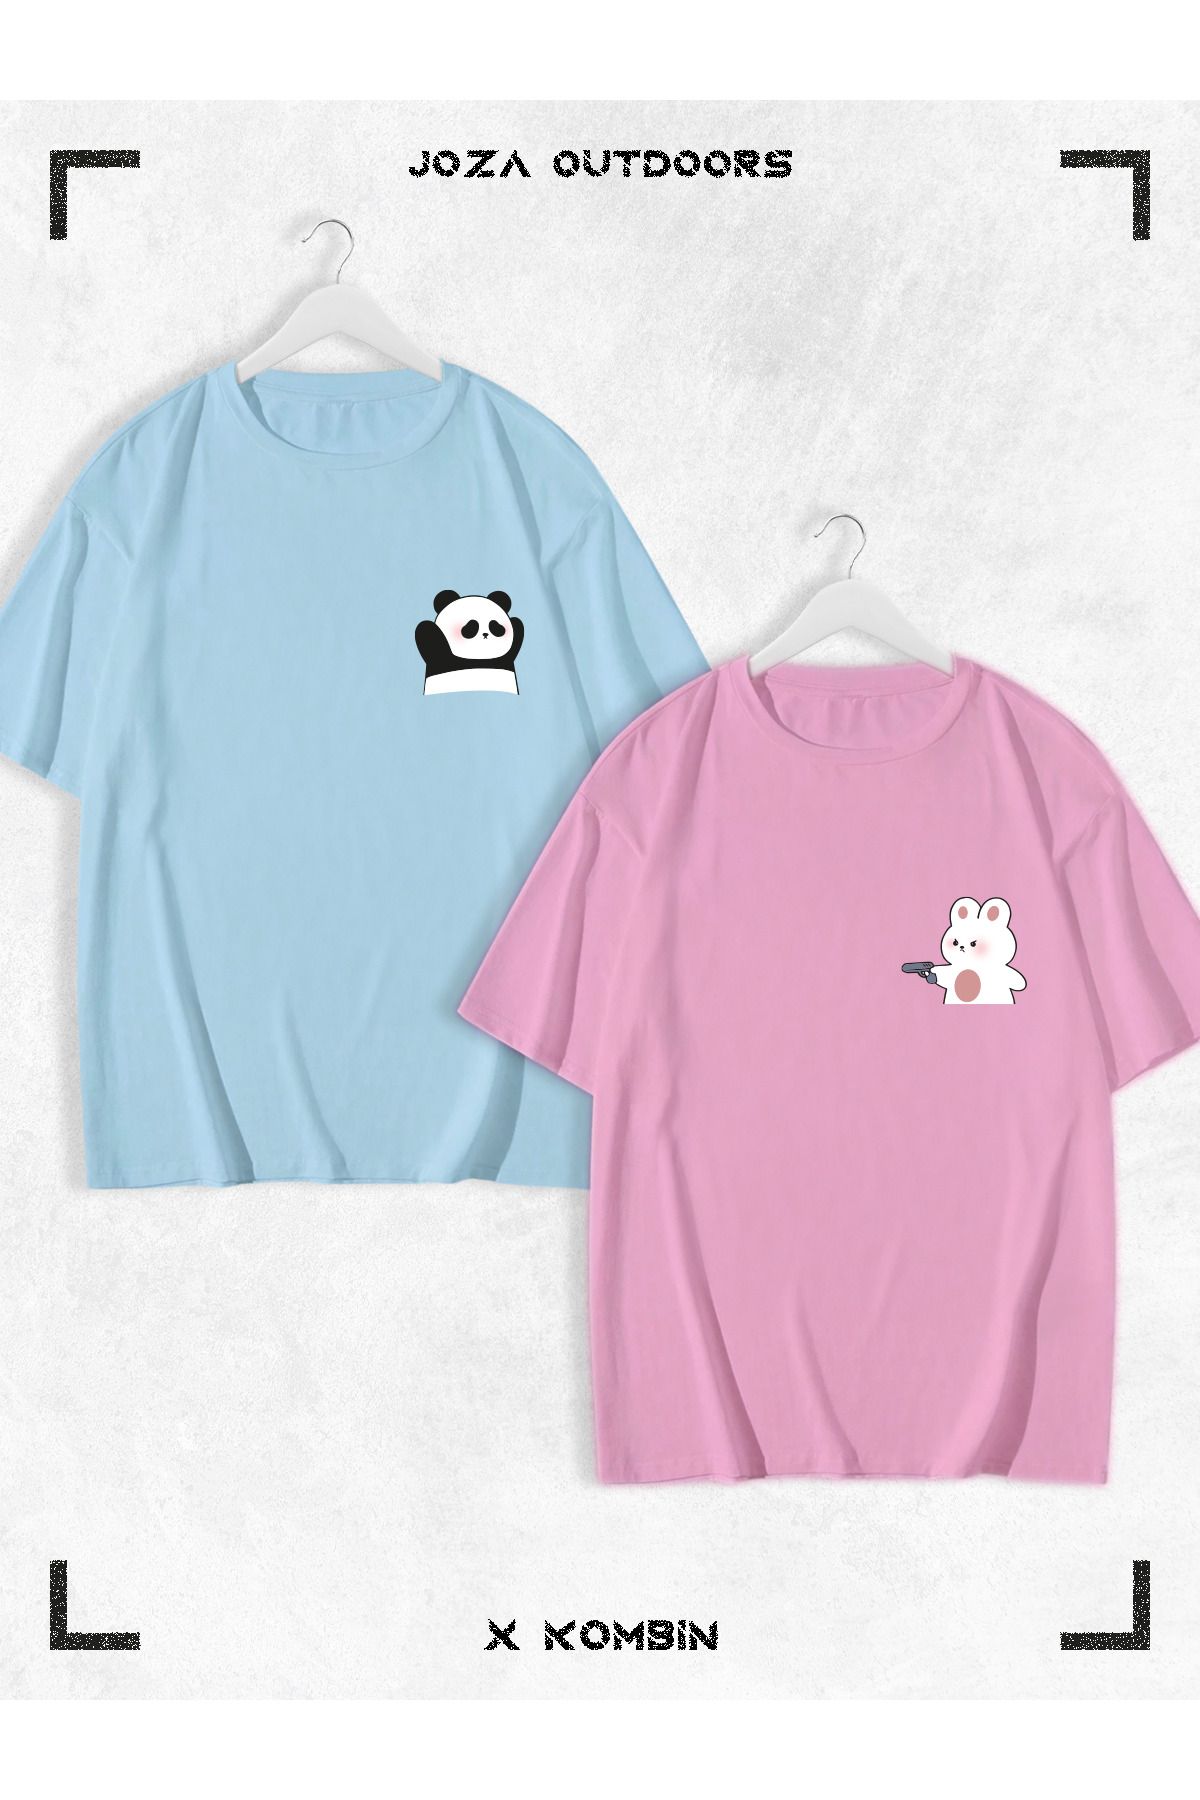 Joza Outdoors Kadın Erkek Unisex Sevimli Ayı Panda Baskılı Sevgili Çift Kombini Oversize Renkli Tshirt 2'li Takım